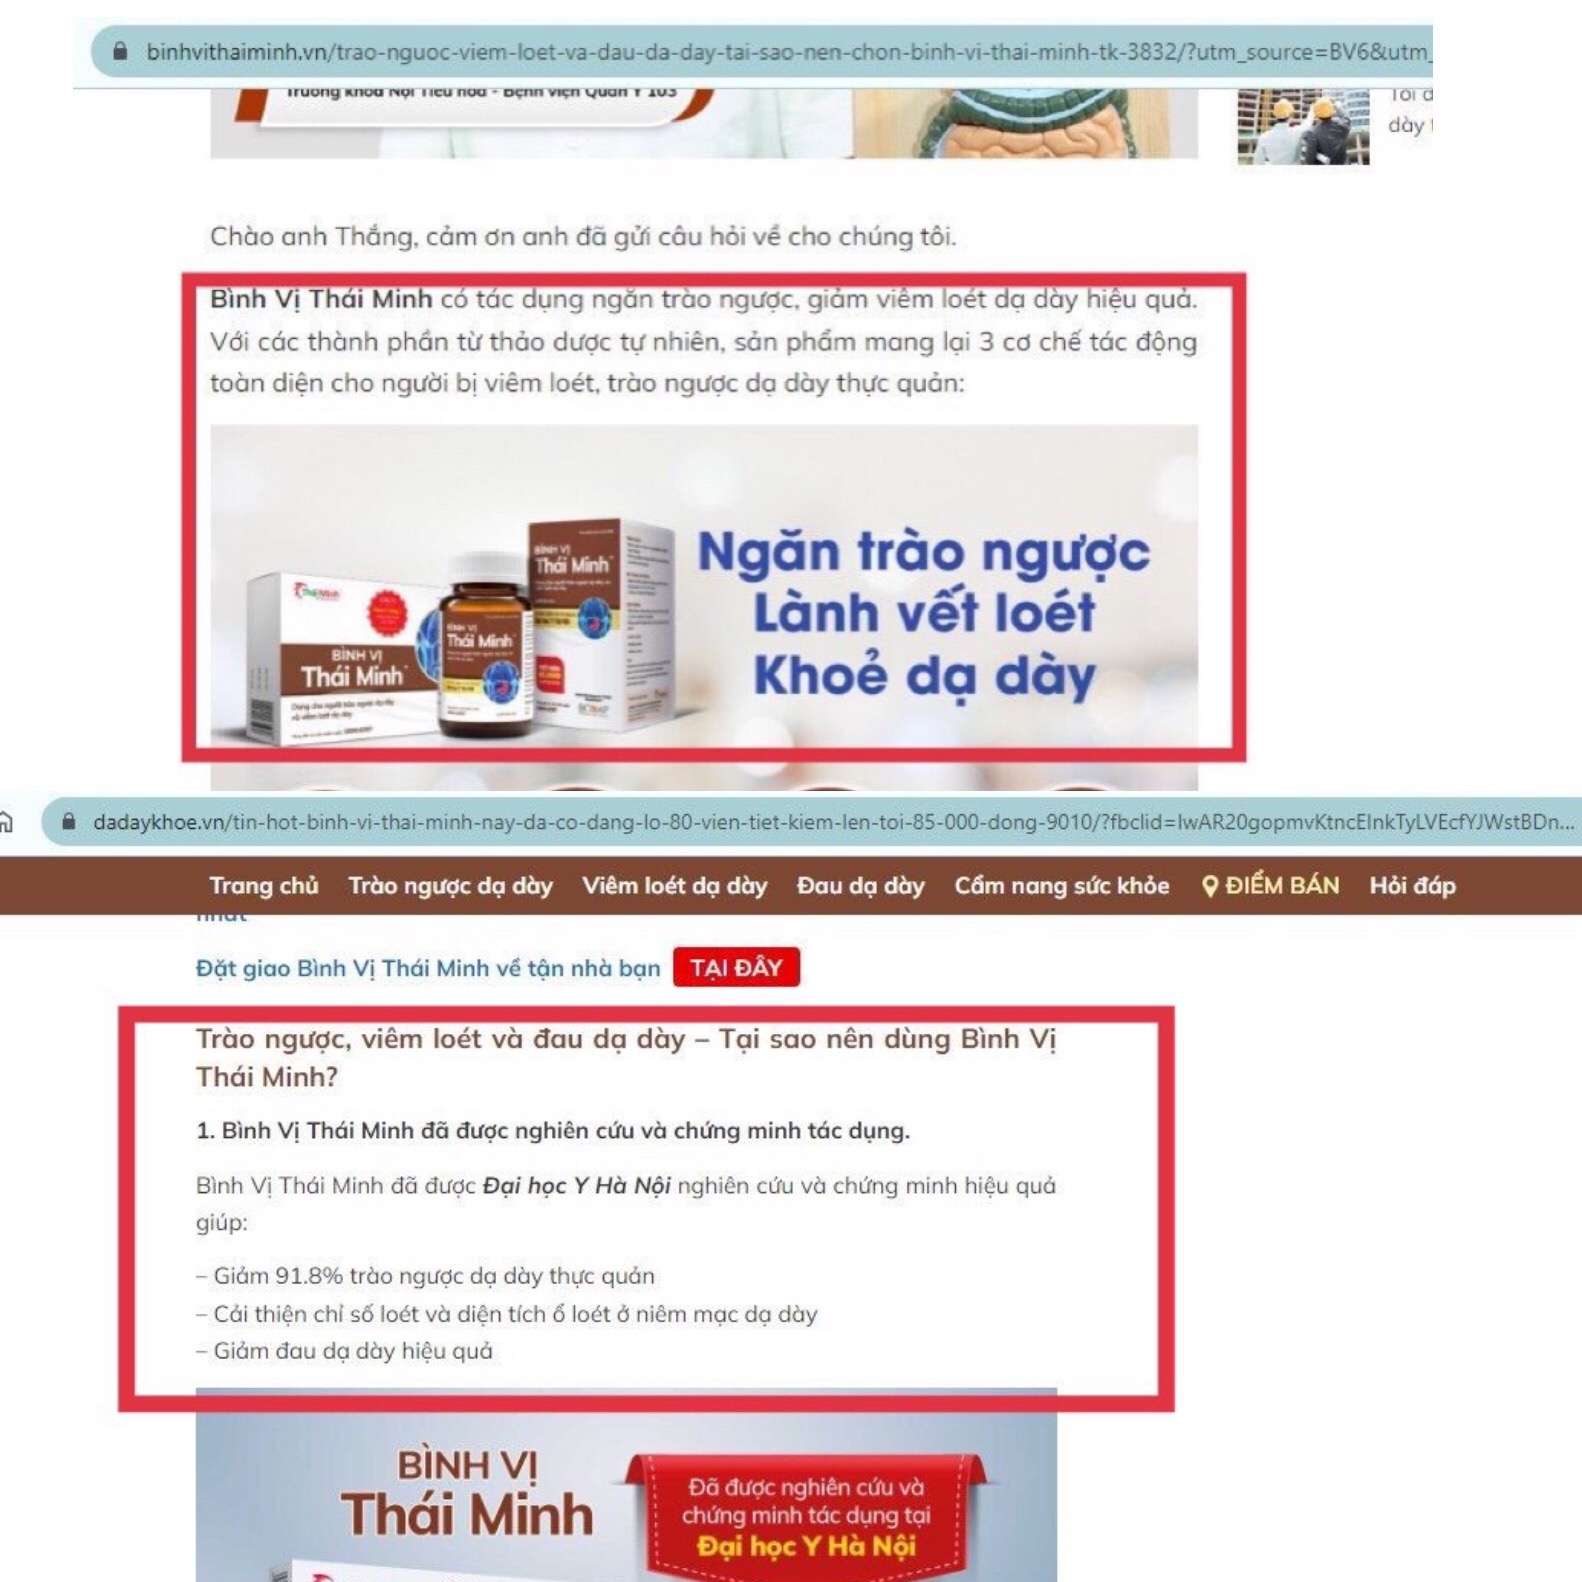 Kinh doanh - “Loạn” quảng cáo thực phẩm bảo vệ sức khoẻ - Bài 1: Điểm mặt Bình vị Thái Minh, viên sủi Lady, Tố ngọc hoàn plus, Trinh nữ hoàng cung Crilin (Hình 5).